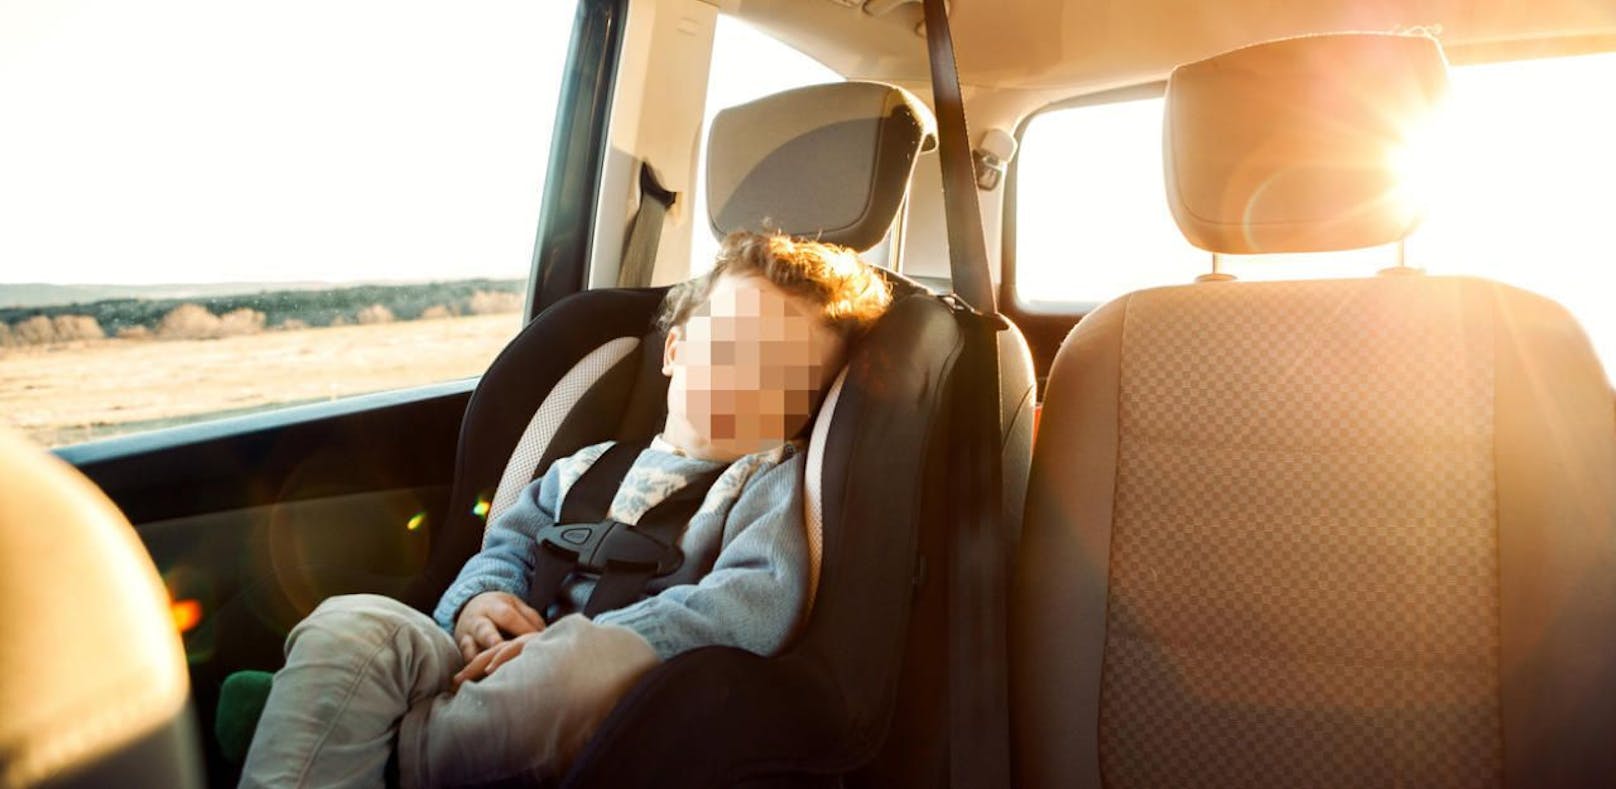 Kind im Hitze-Auto gelassen: Vater in Wien verurteilt